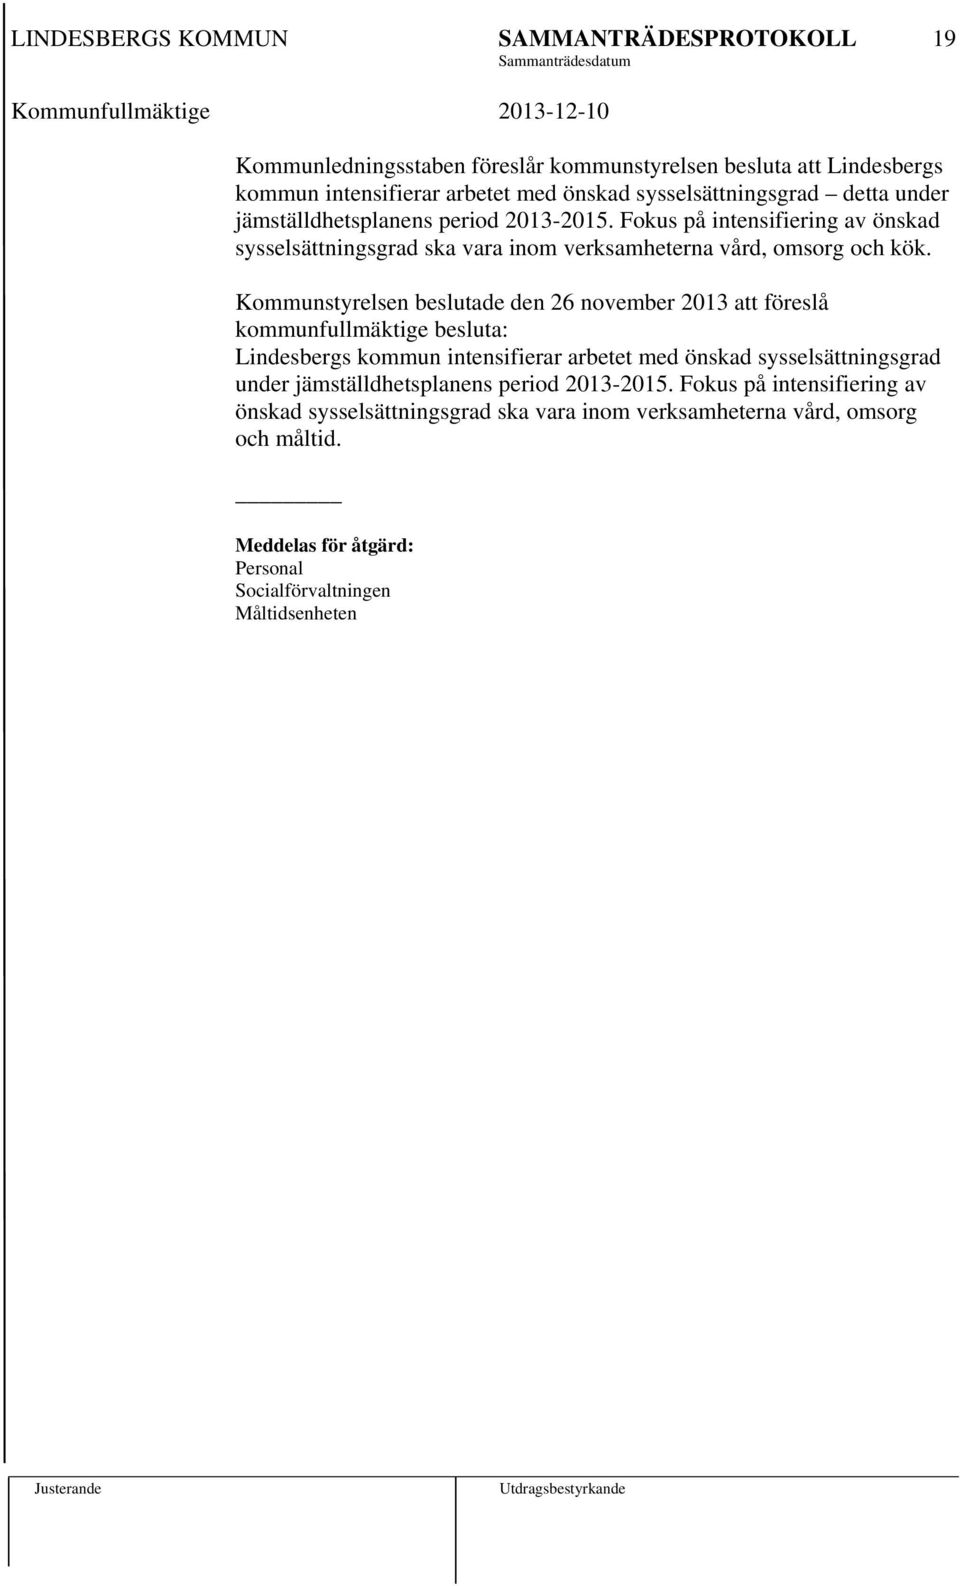 Kommunstyrelsen beslutade den 26 november 2013 att föreslå kommunfullmäktige besluta: Lindesbergs kommun intensifierar arbetet med önskad sysselsättningsgrad under